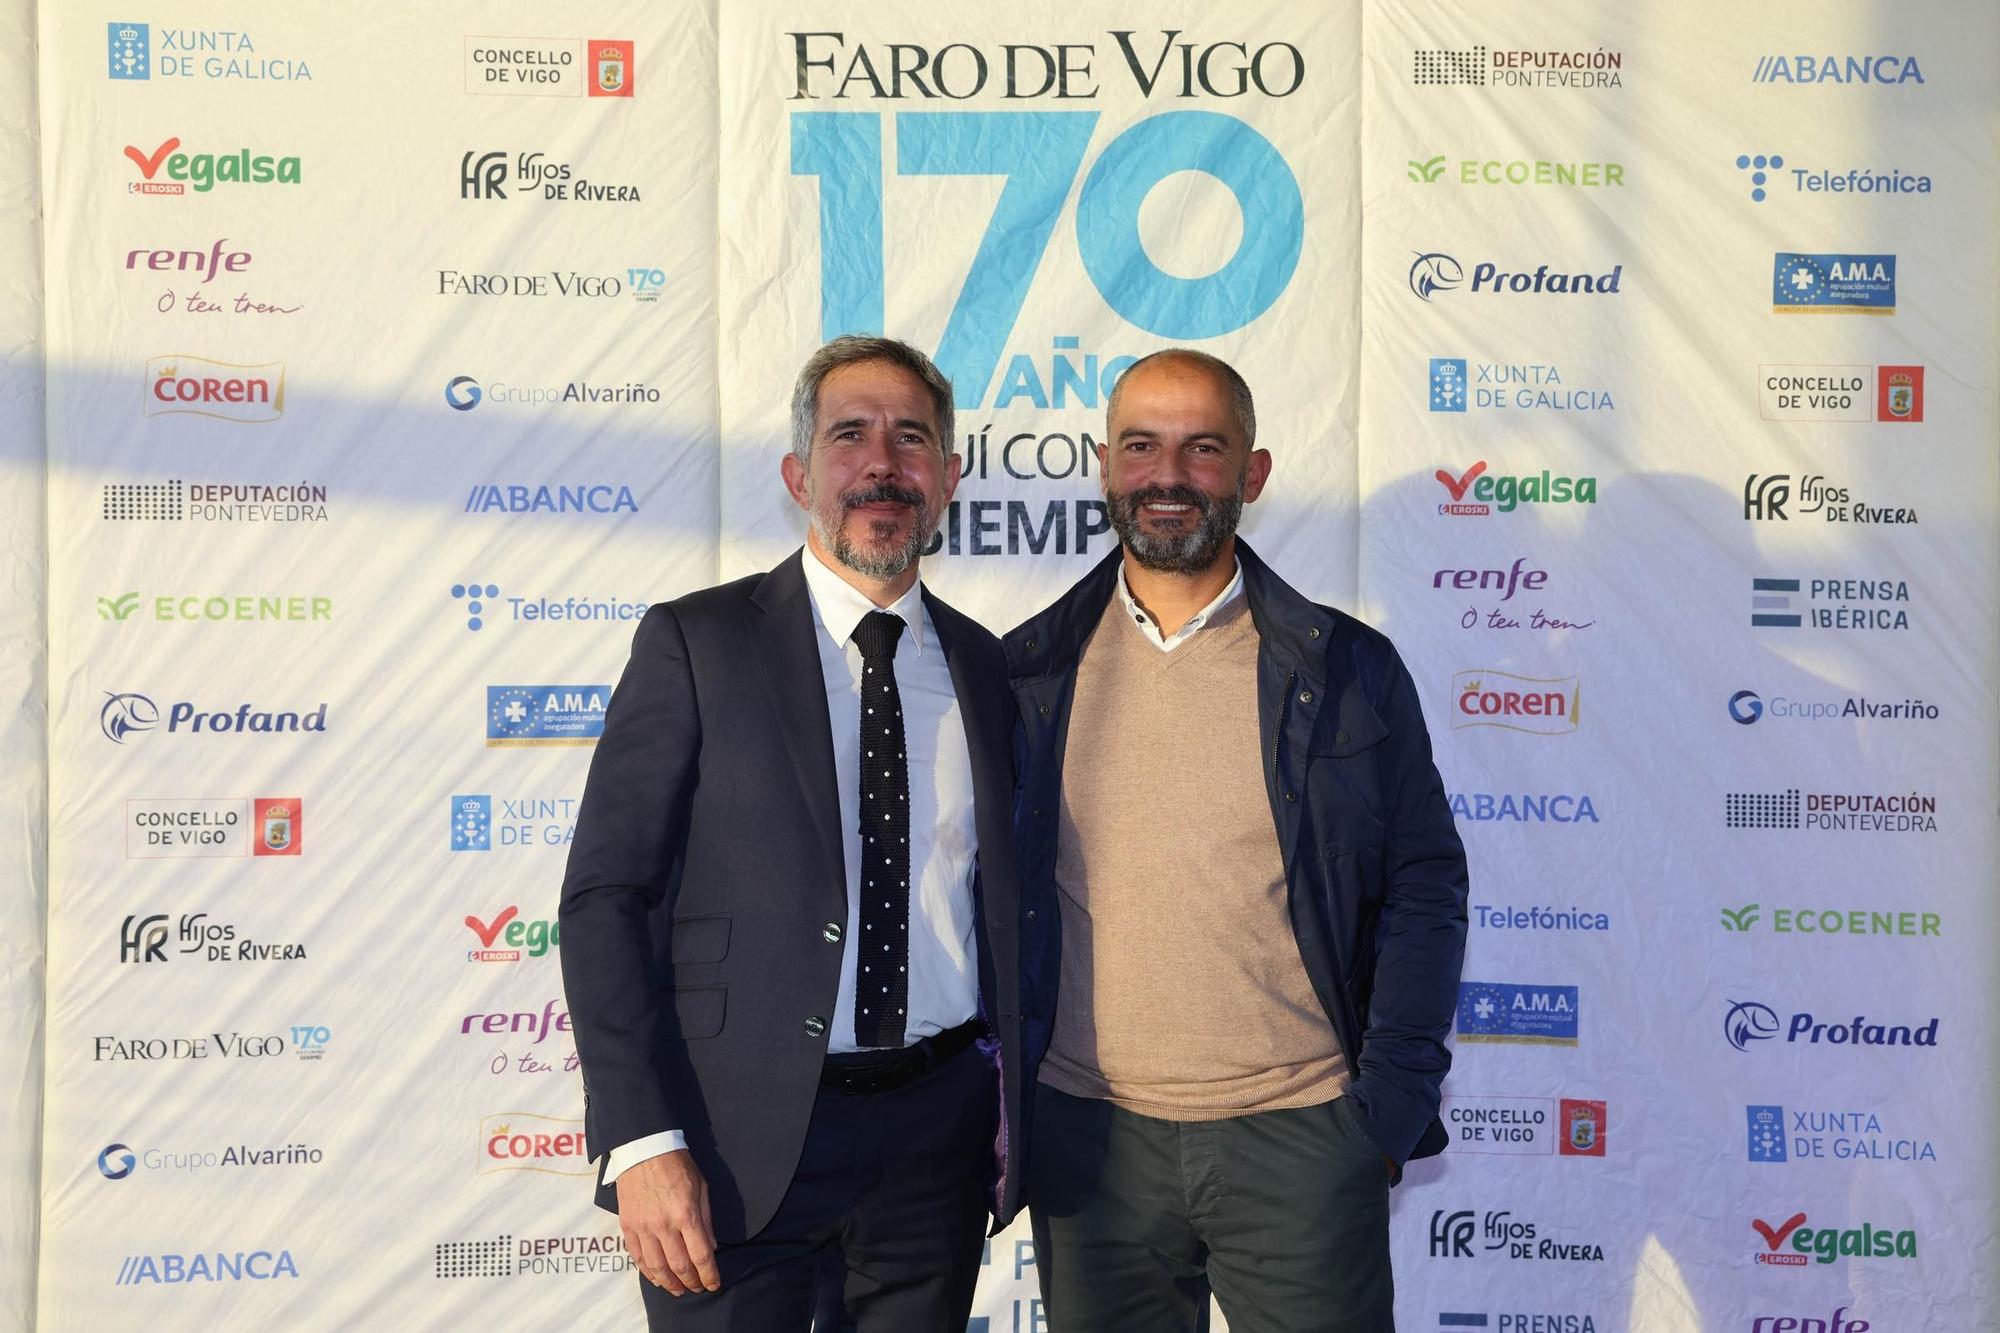 La celebración del 170 aniversario de Faro de Vigo, en imágenes